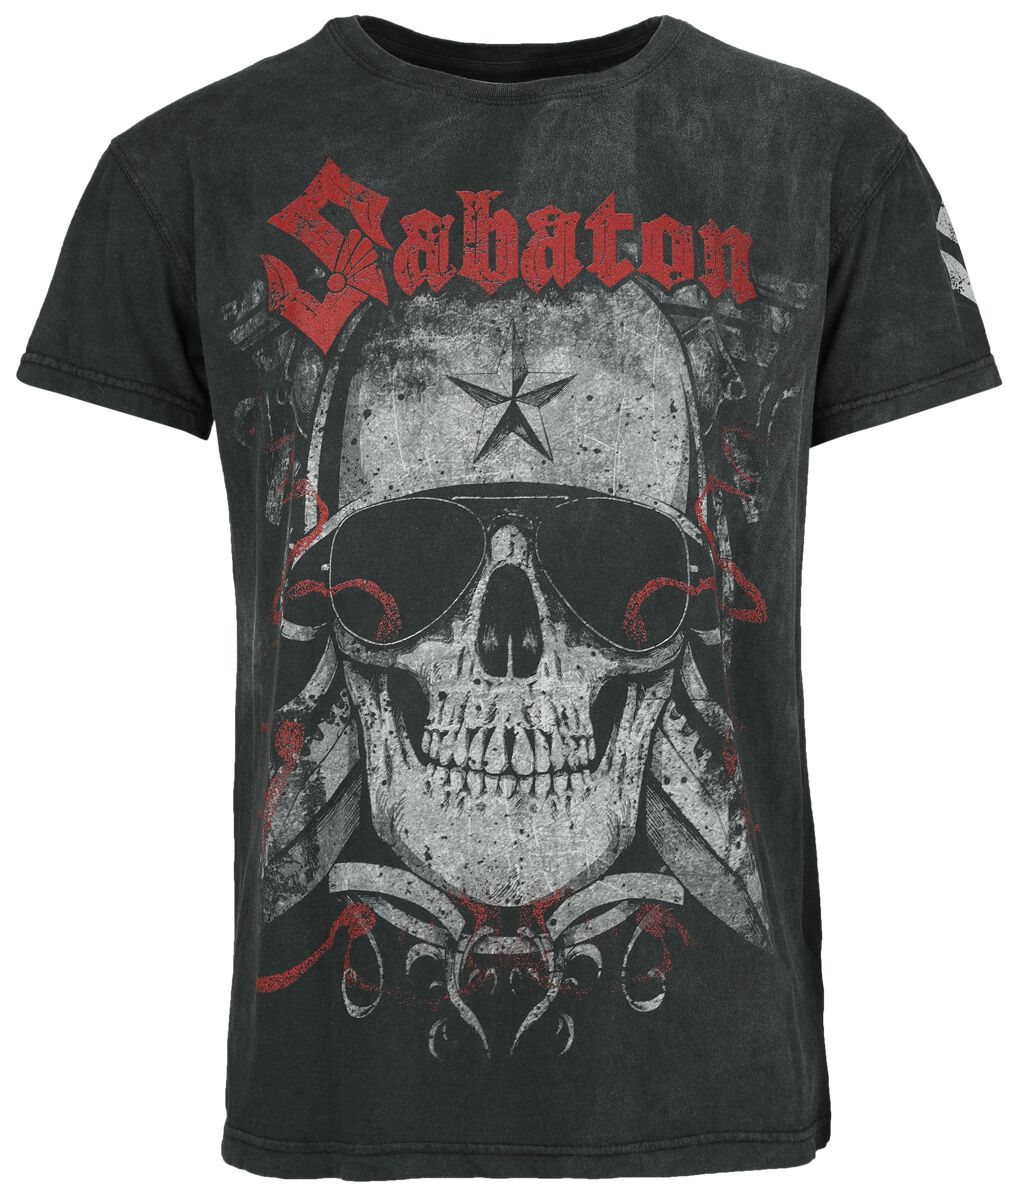 Sabaton T-Shirt - Unknown Soldier - XXL bis 4XL - für Männer - Größe 3XL - schwarz  - EMP exklusives Merchandise!